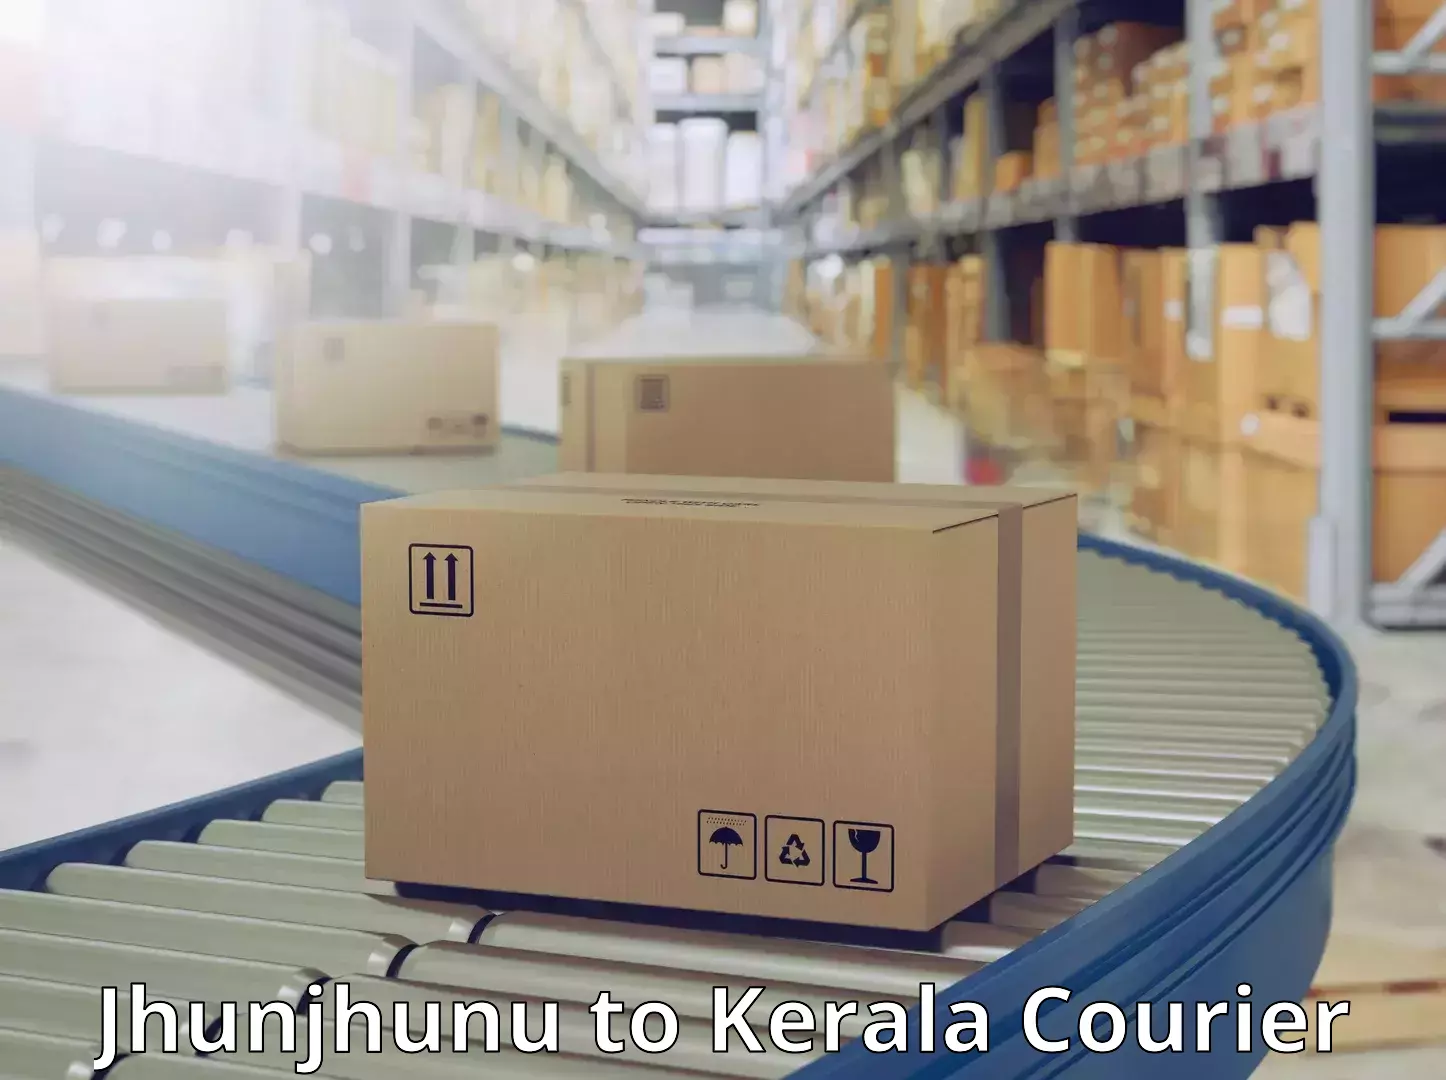 Individual parcel service Jhunjhunu to Kallikkad